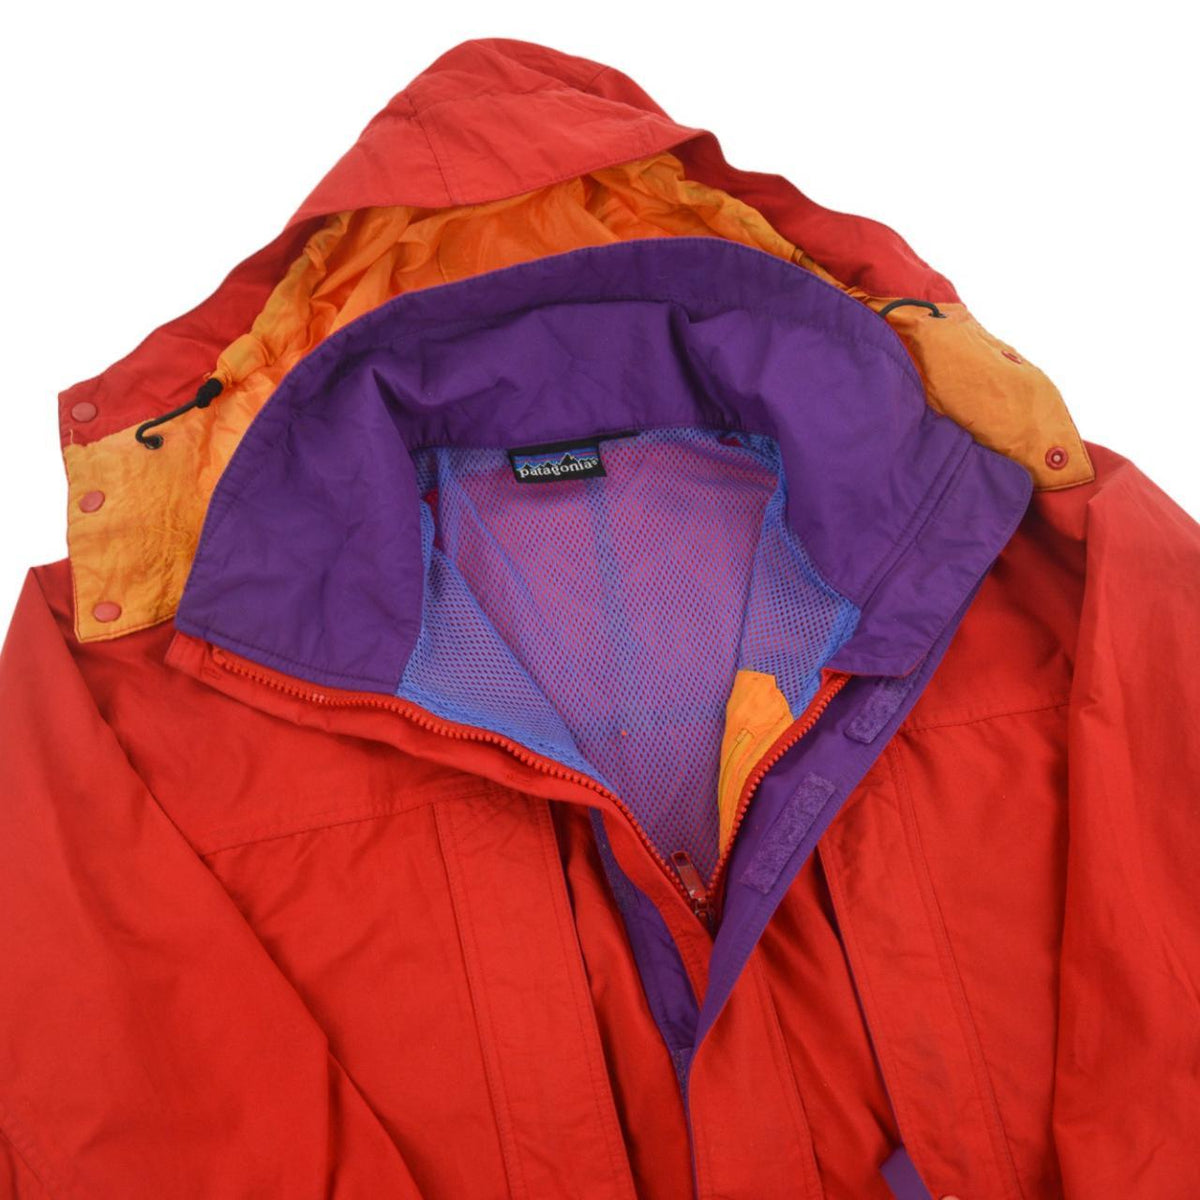 Vintage Patagonia Jacket Size M